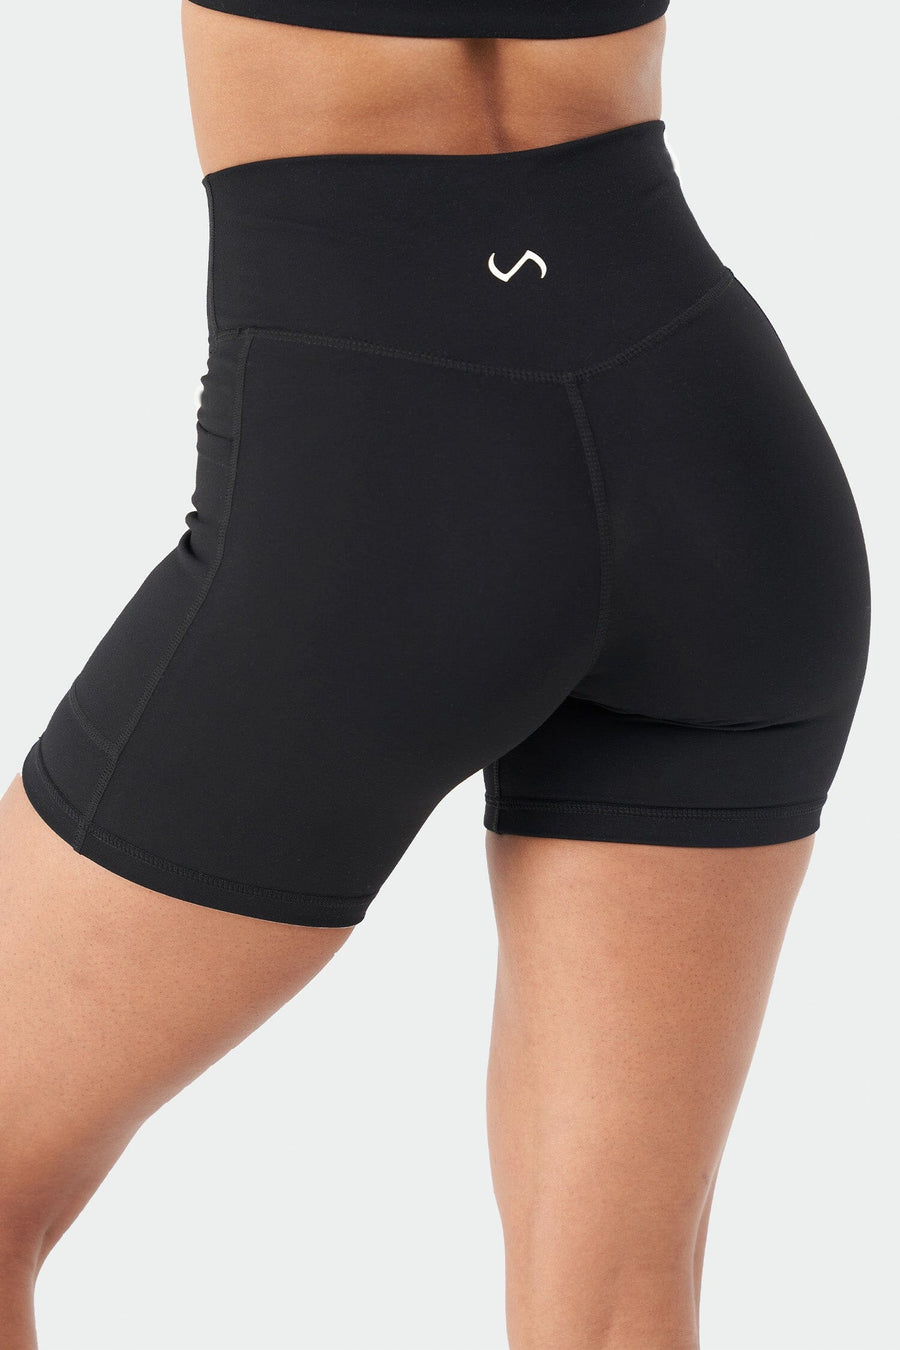 Reset Side Pocket Gym Shorts - Black - 5